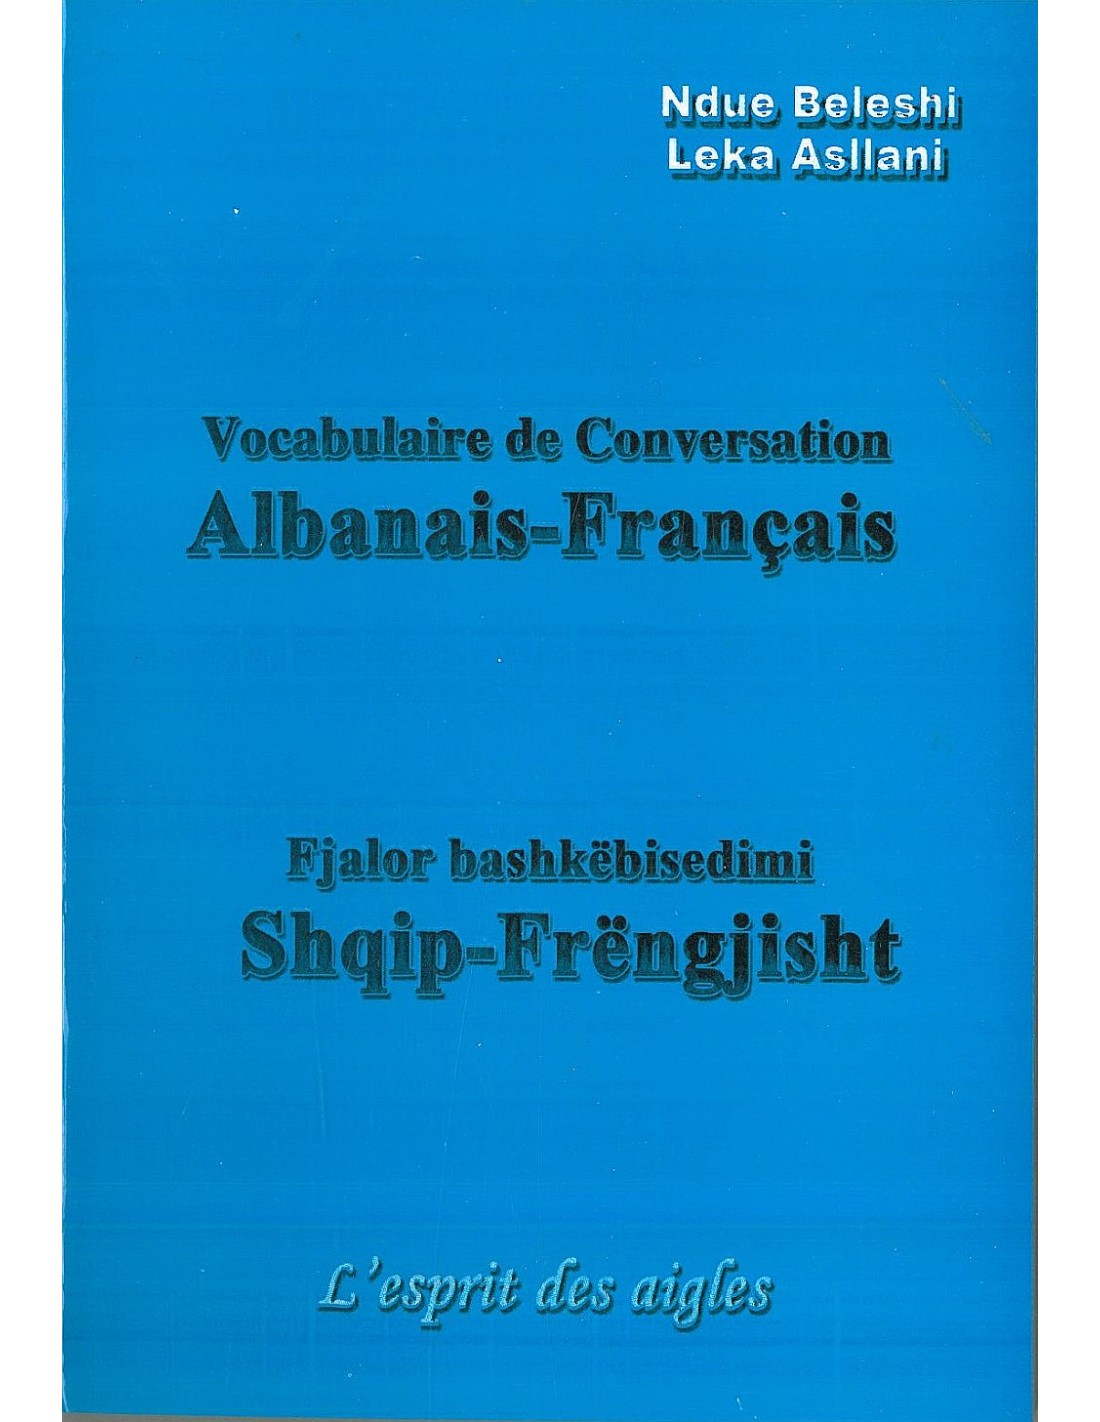 fjalor shqip frengjisht